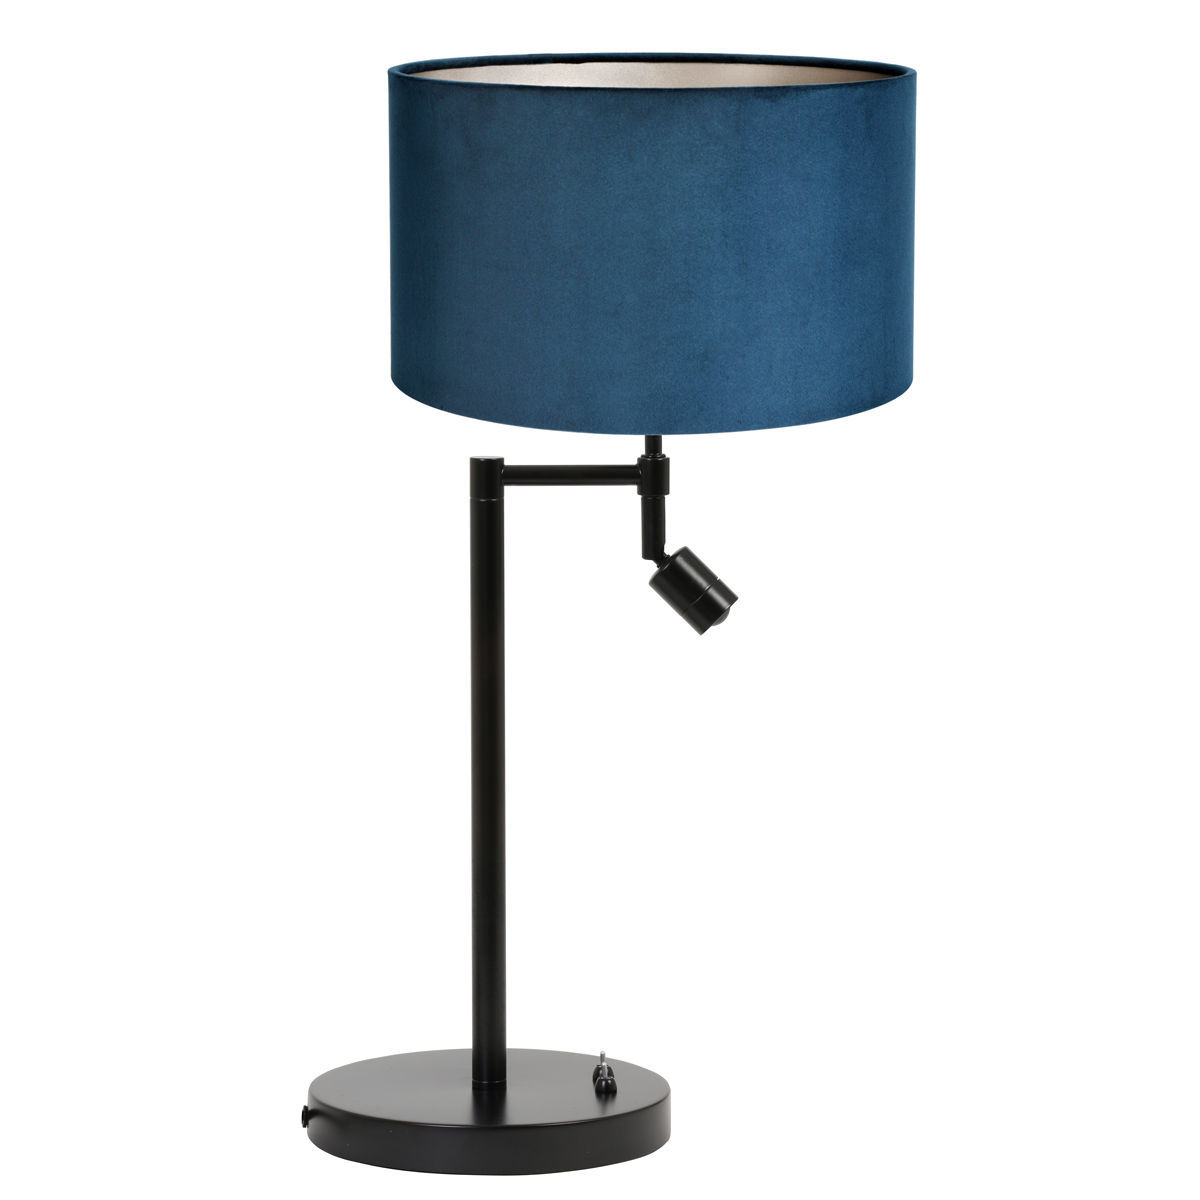 Metalen moderne tafellamp met kap blauw | Industriele lampen online